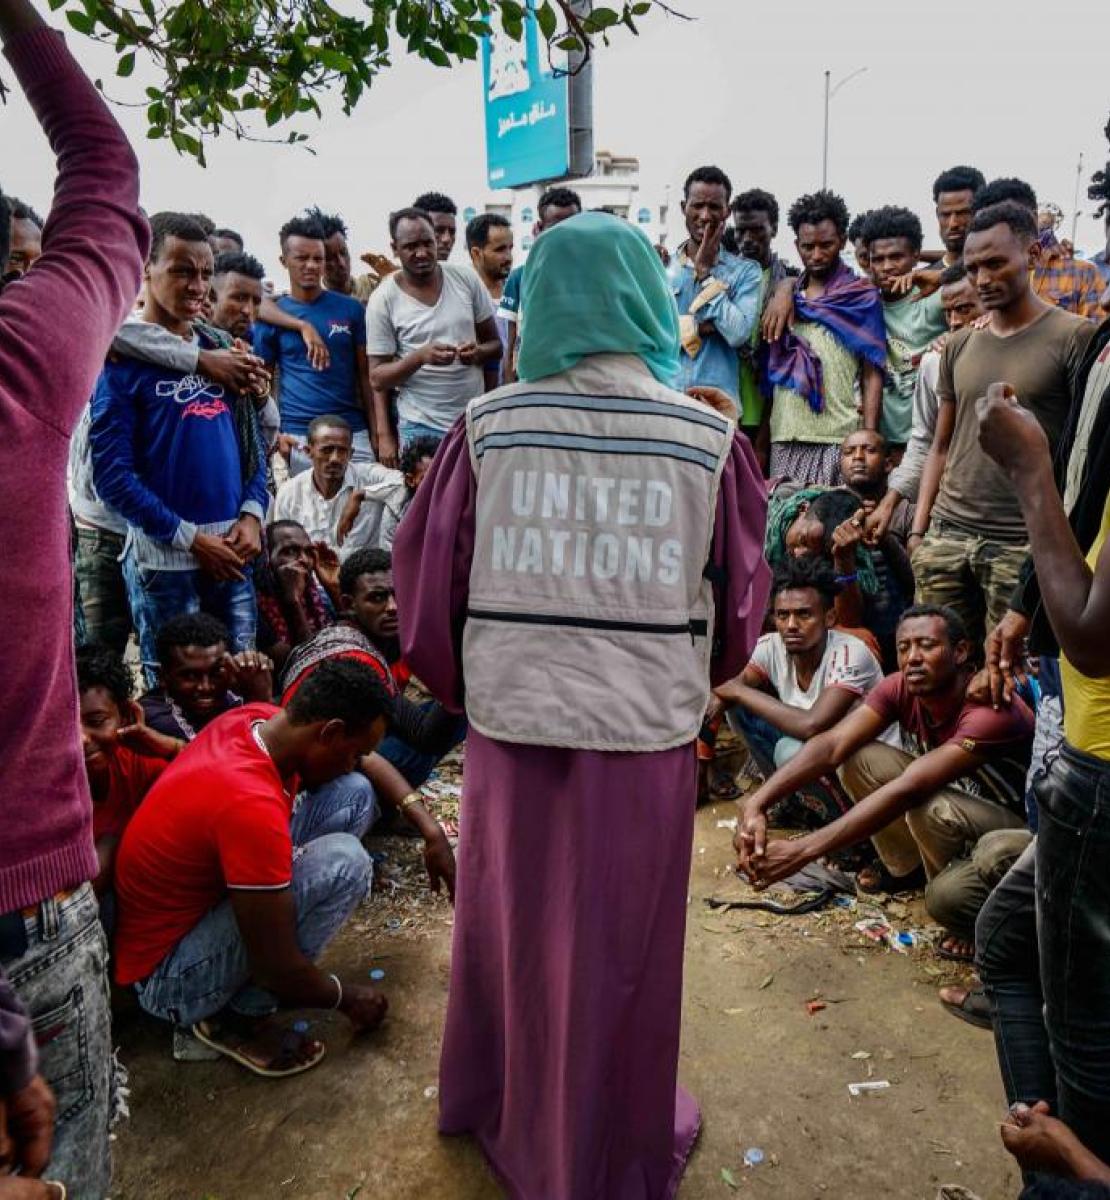 امرأة ترتدي سترة الأمم المتحدة محاطة بالعديد من الأشخاص في انتظار تلقي المساعدة الإنسانية.